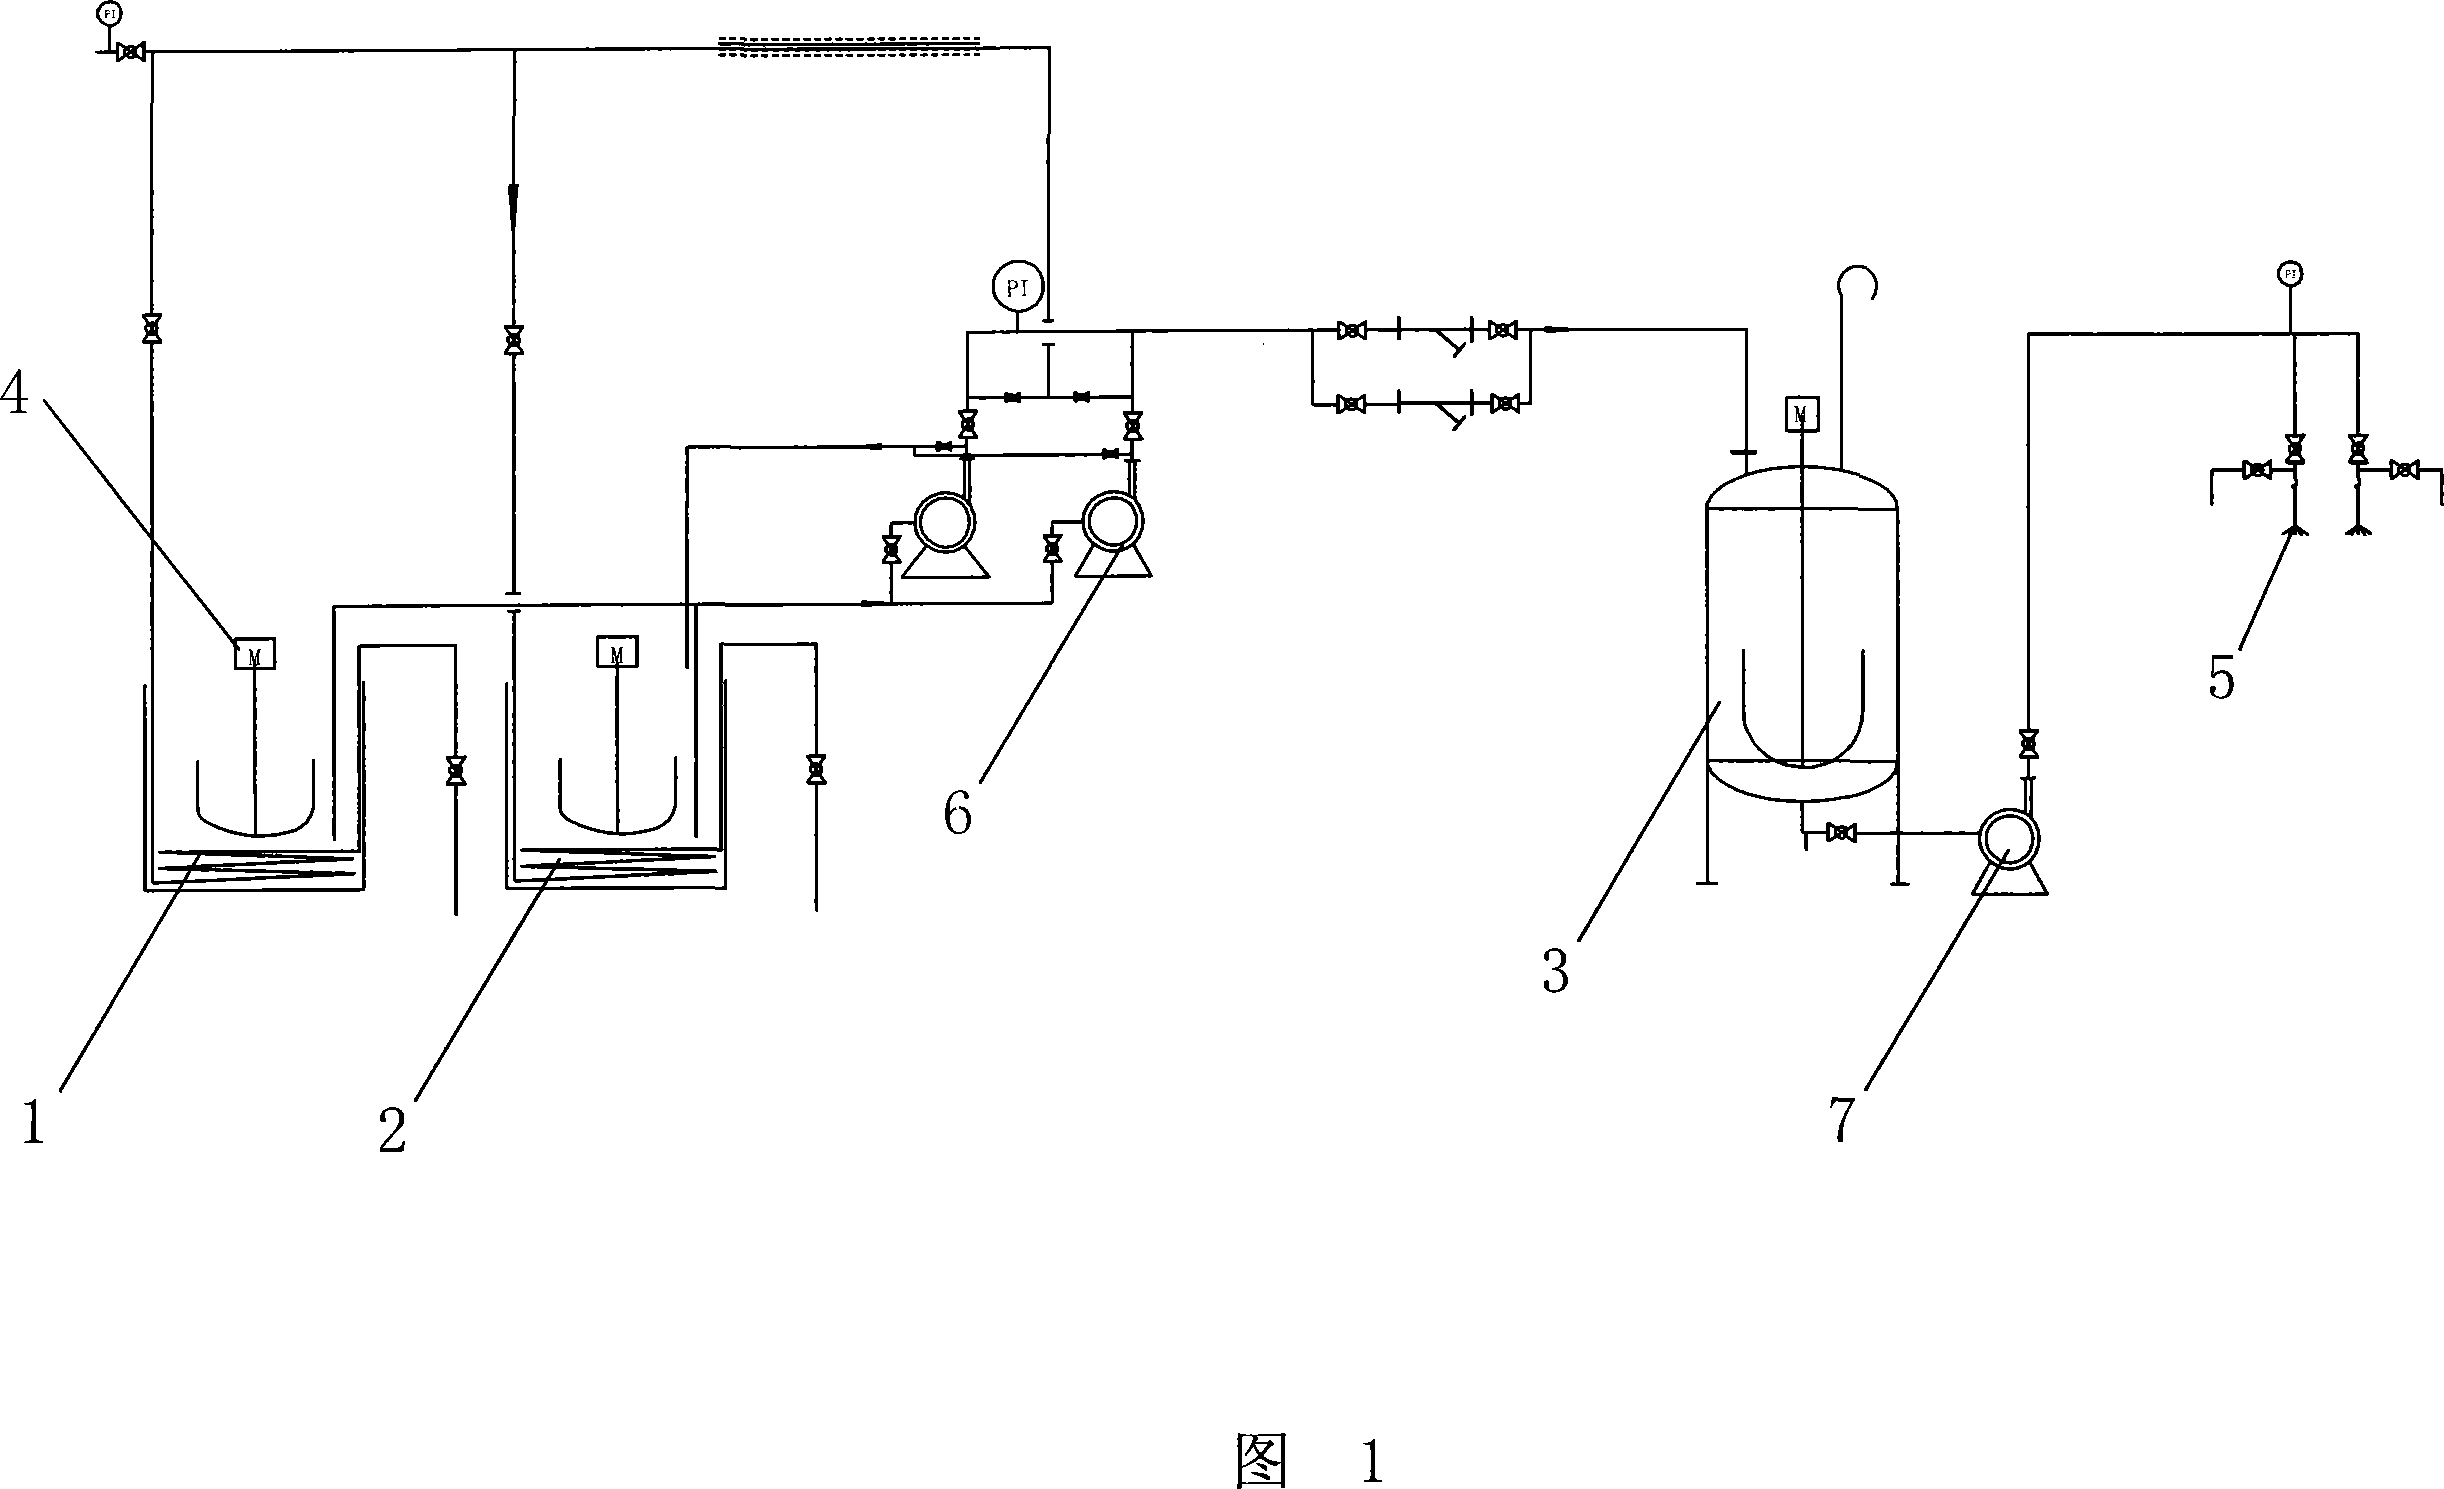 Process technique for furol waste liquid